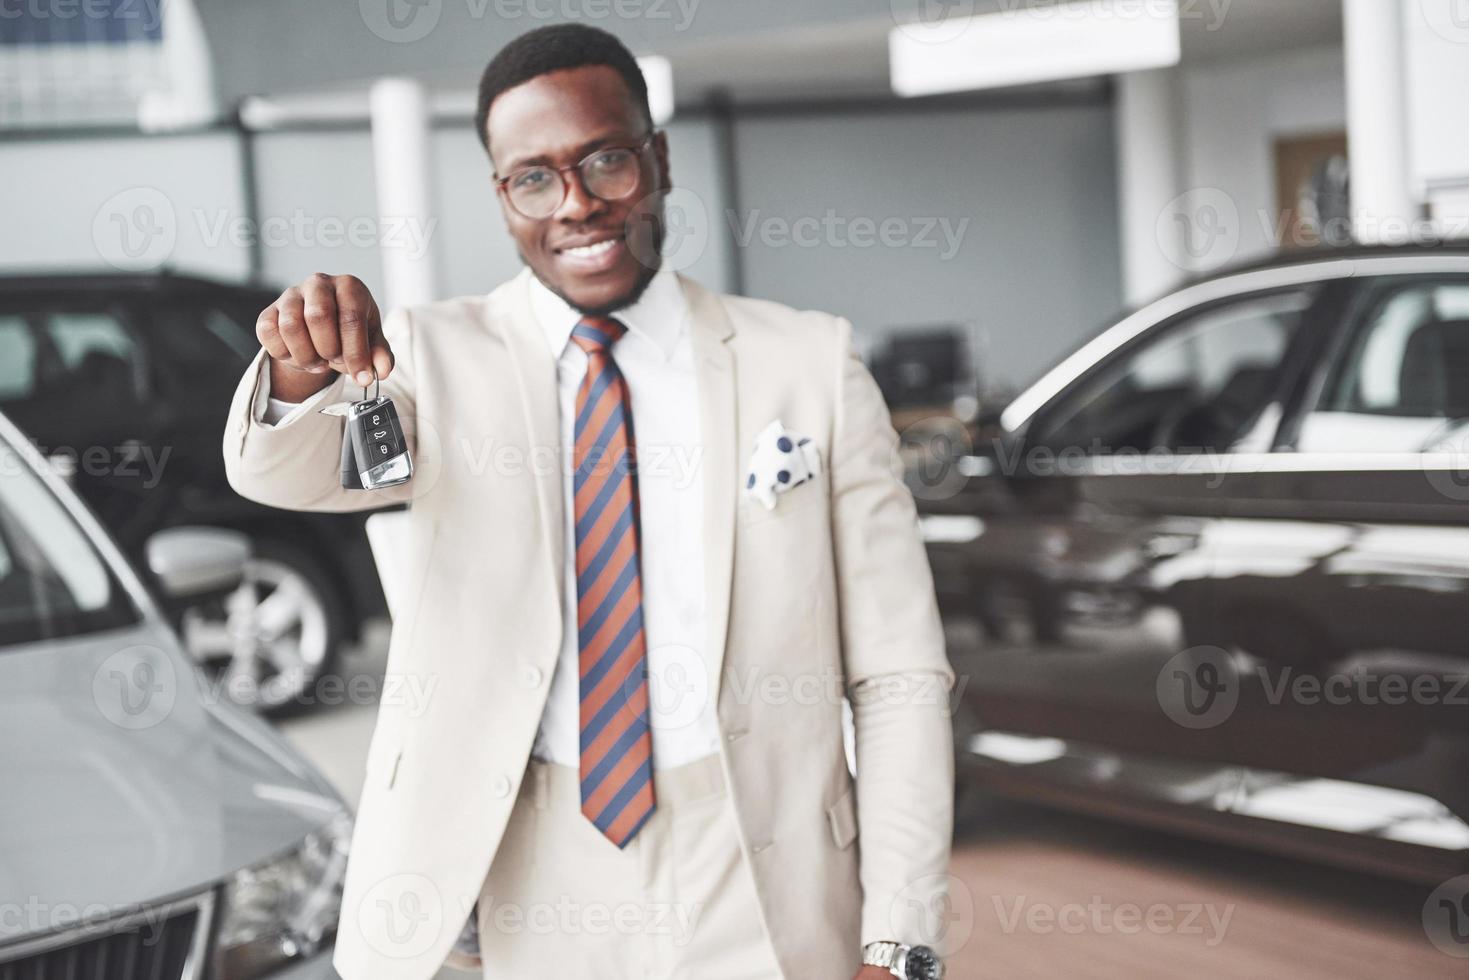 il giovane uomo d'affari nero attraente acquista una nuova auto, tiene le chiavi in mano. i sogni diventano realtà foto